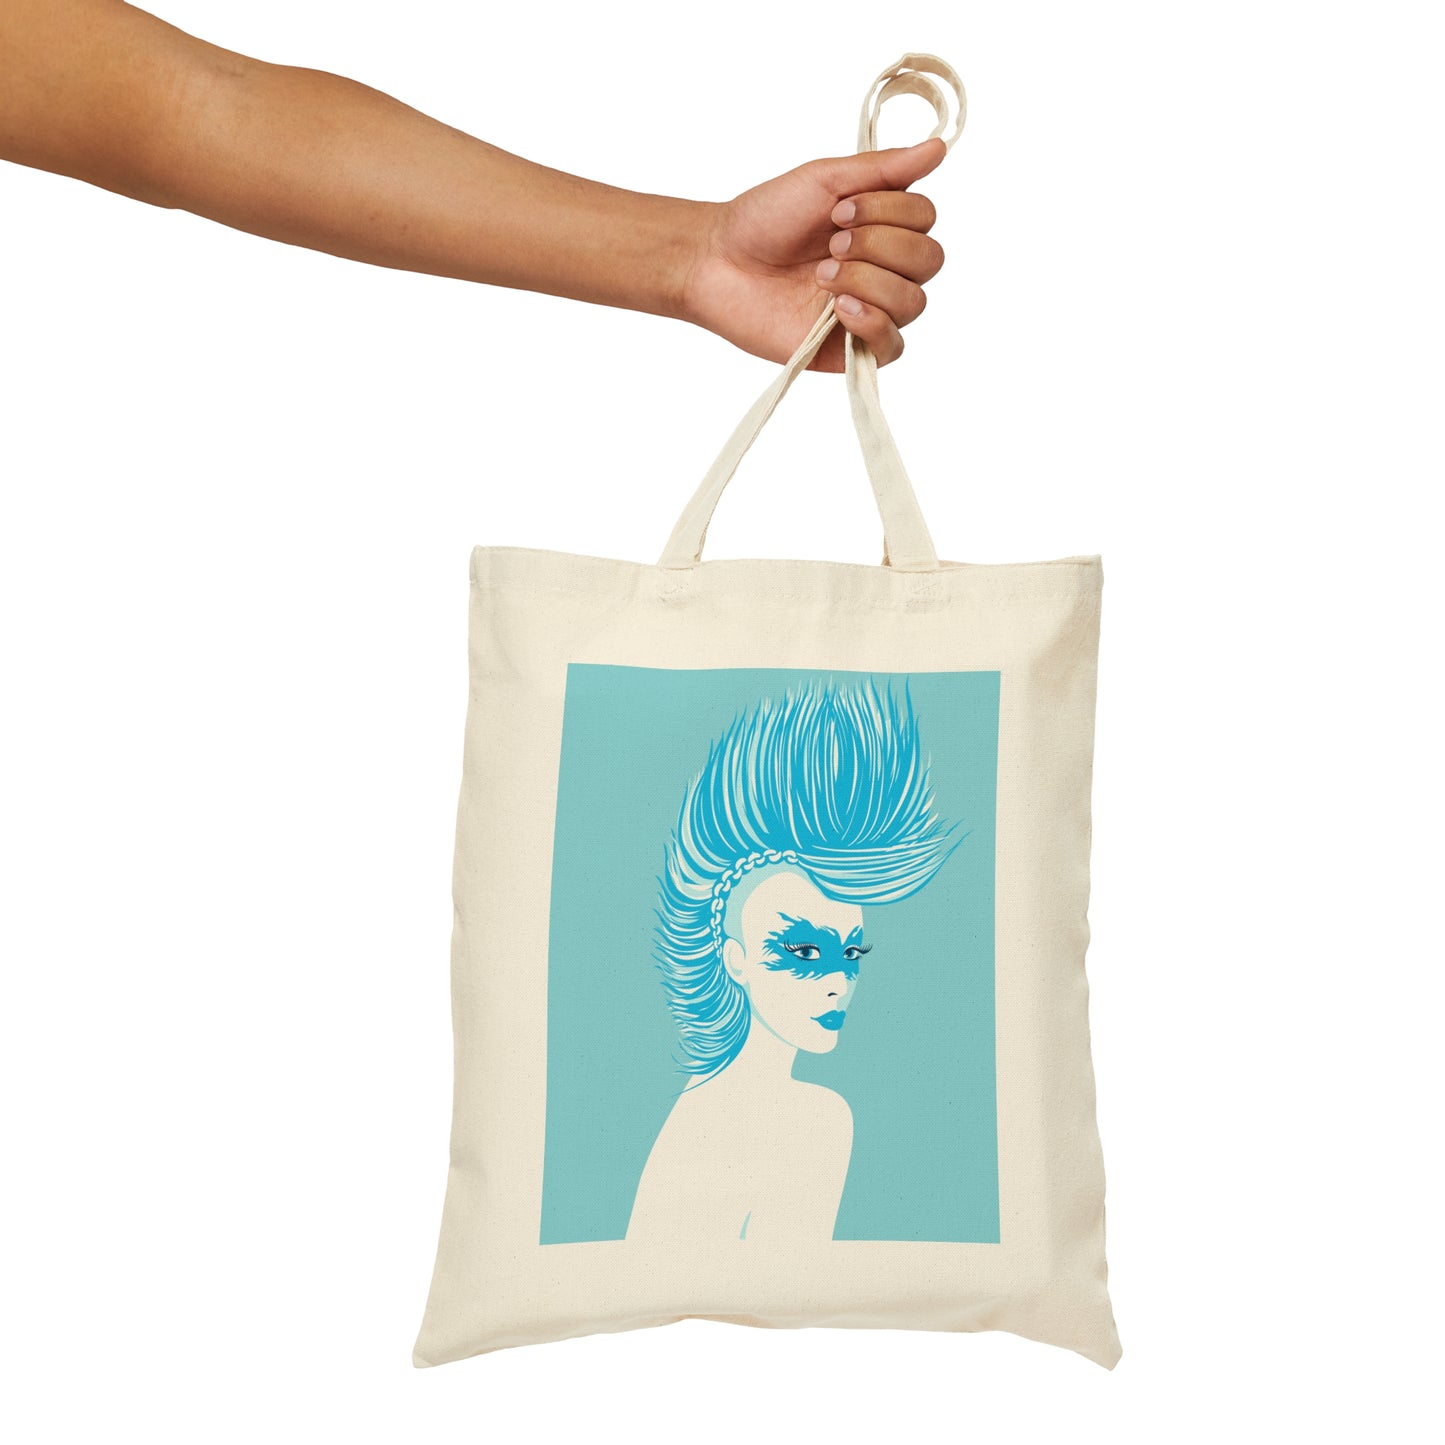 Blue Punk Woman Art Unique Edgy Graphic Canvas Shopping Cotton Tote Bag